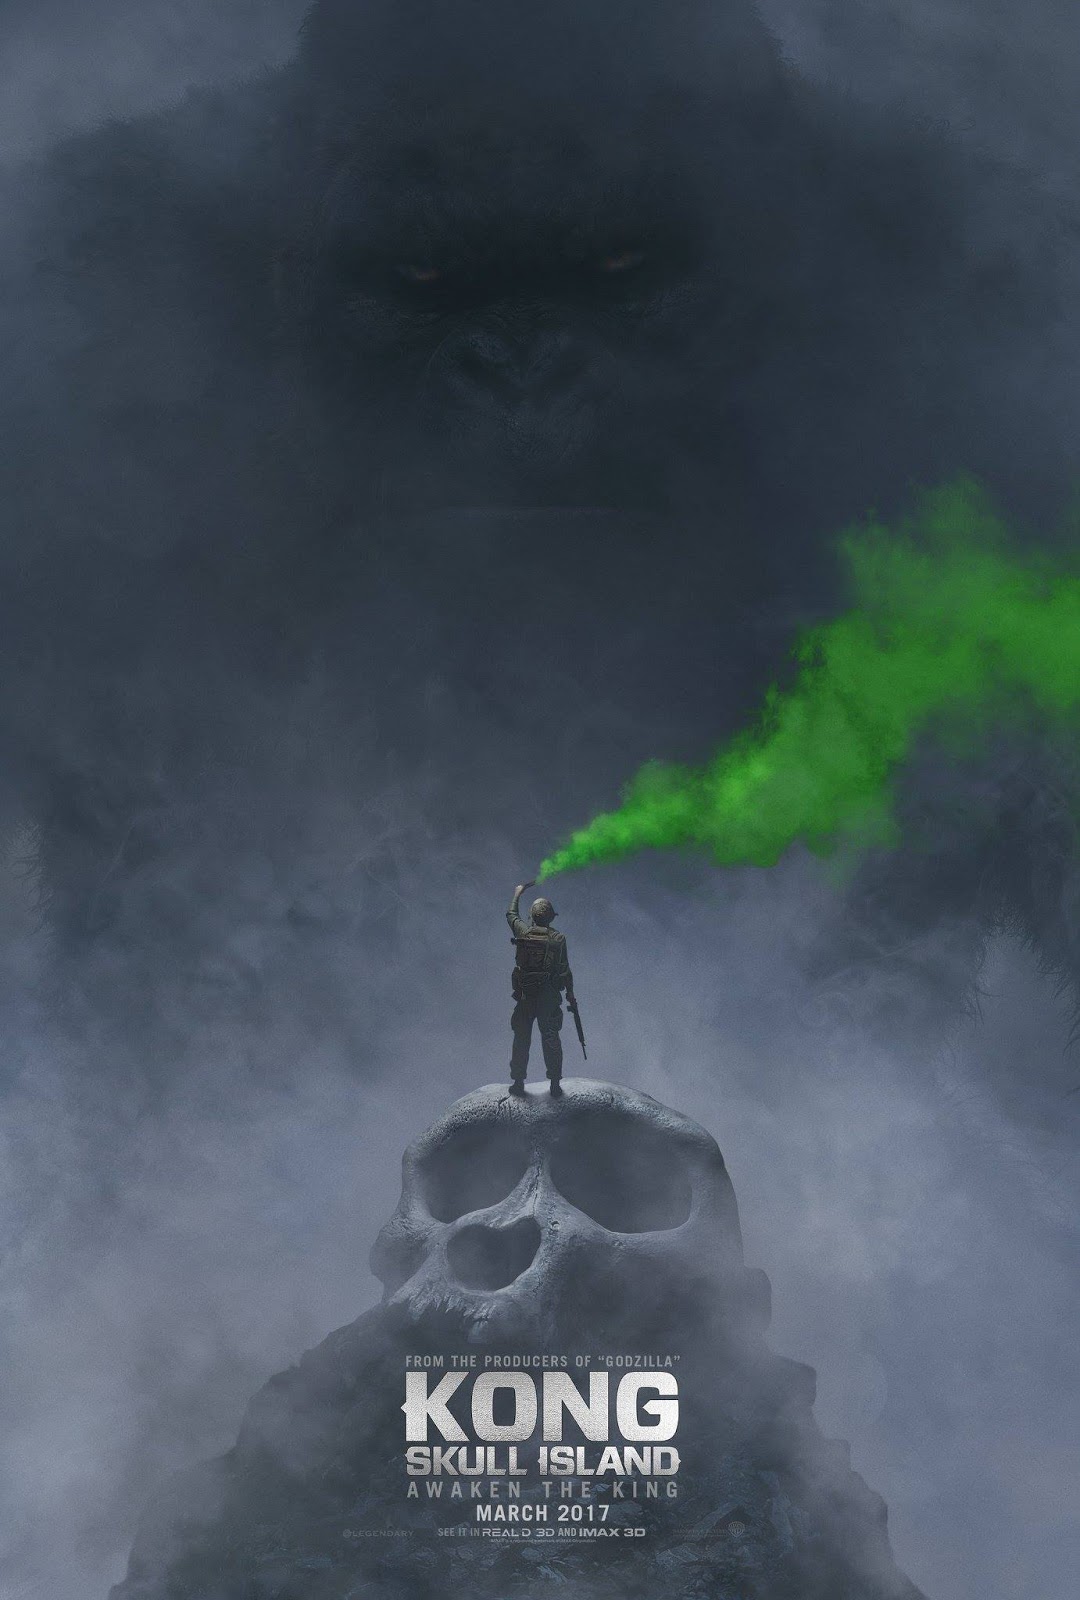 Đánh giá phim: Kong: Skull Island (2017) - Hình ảnh Việt Nam quá tuyệt vời